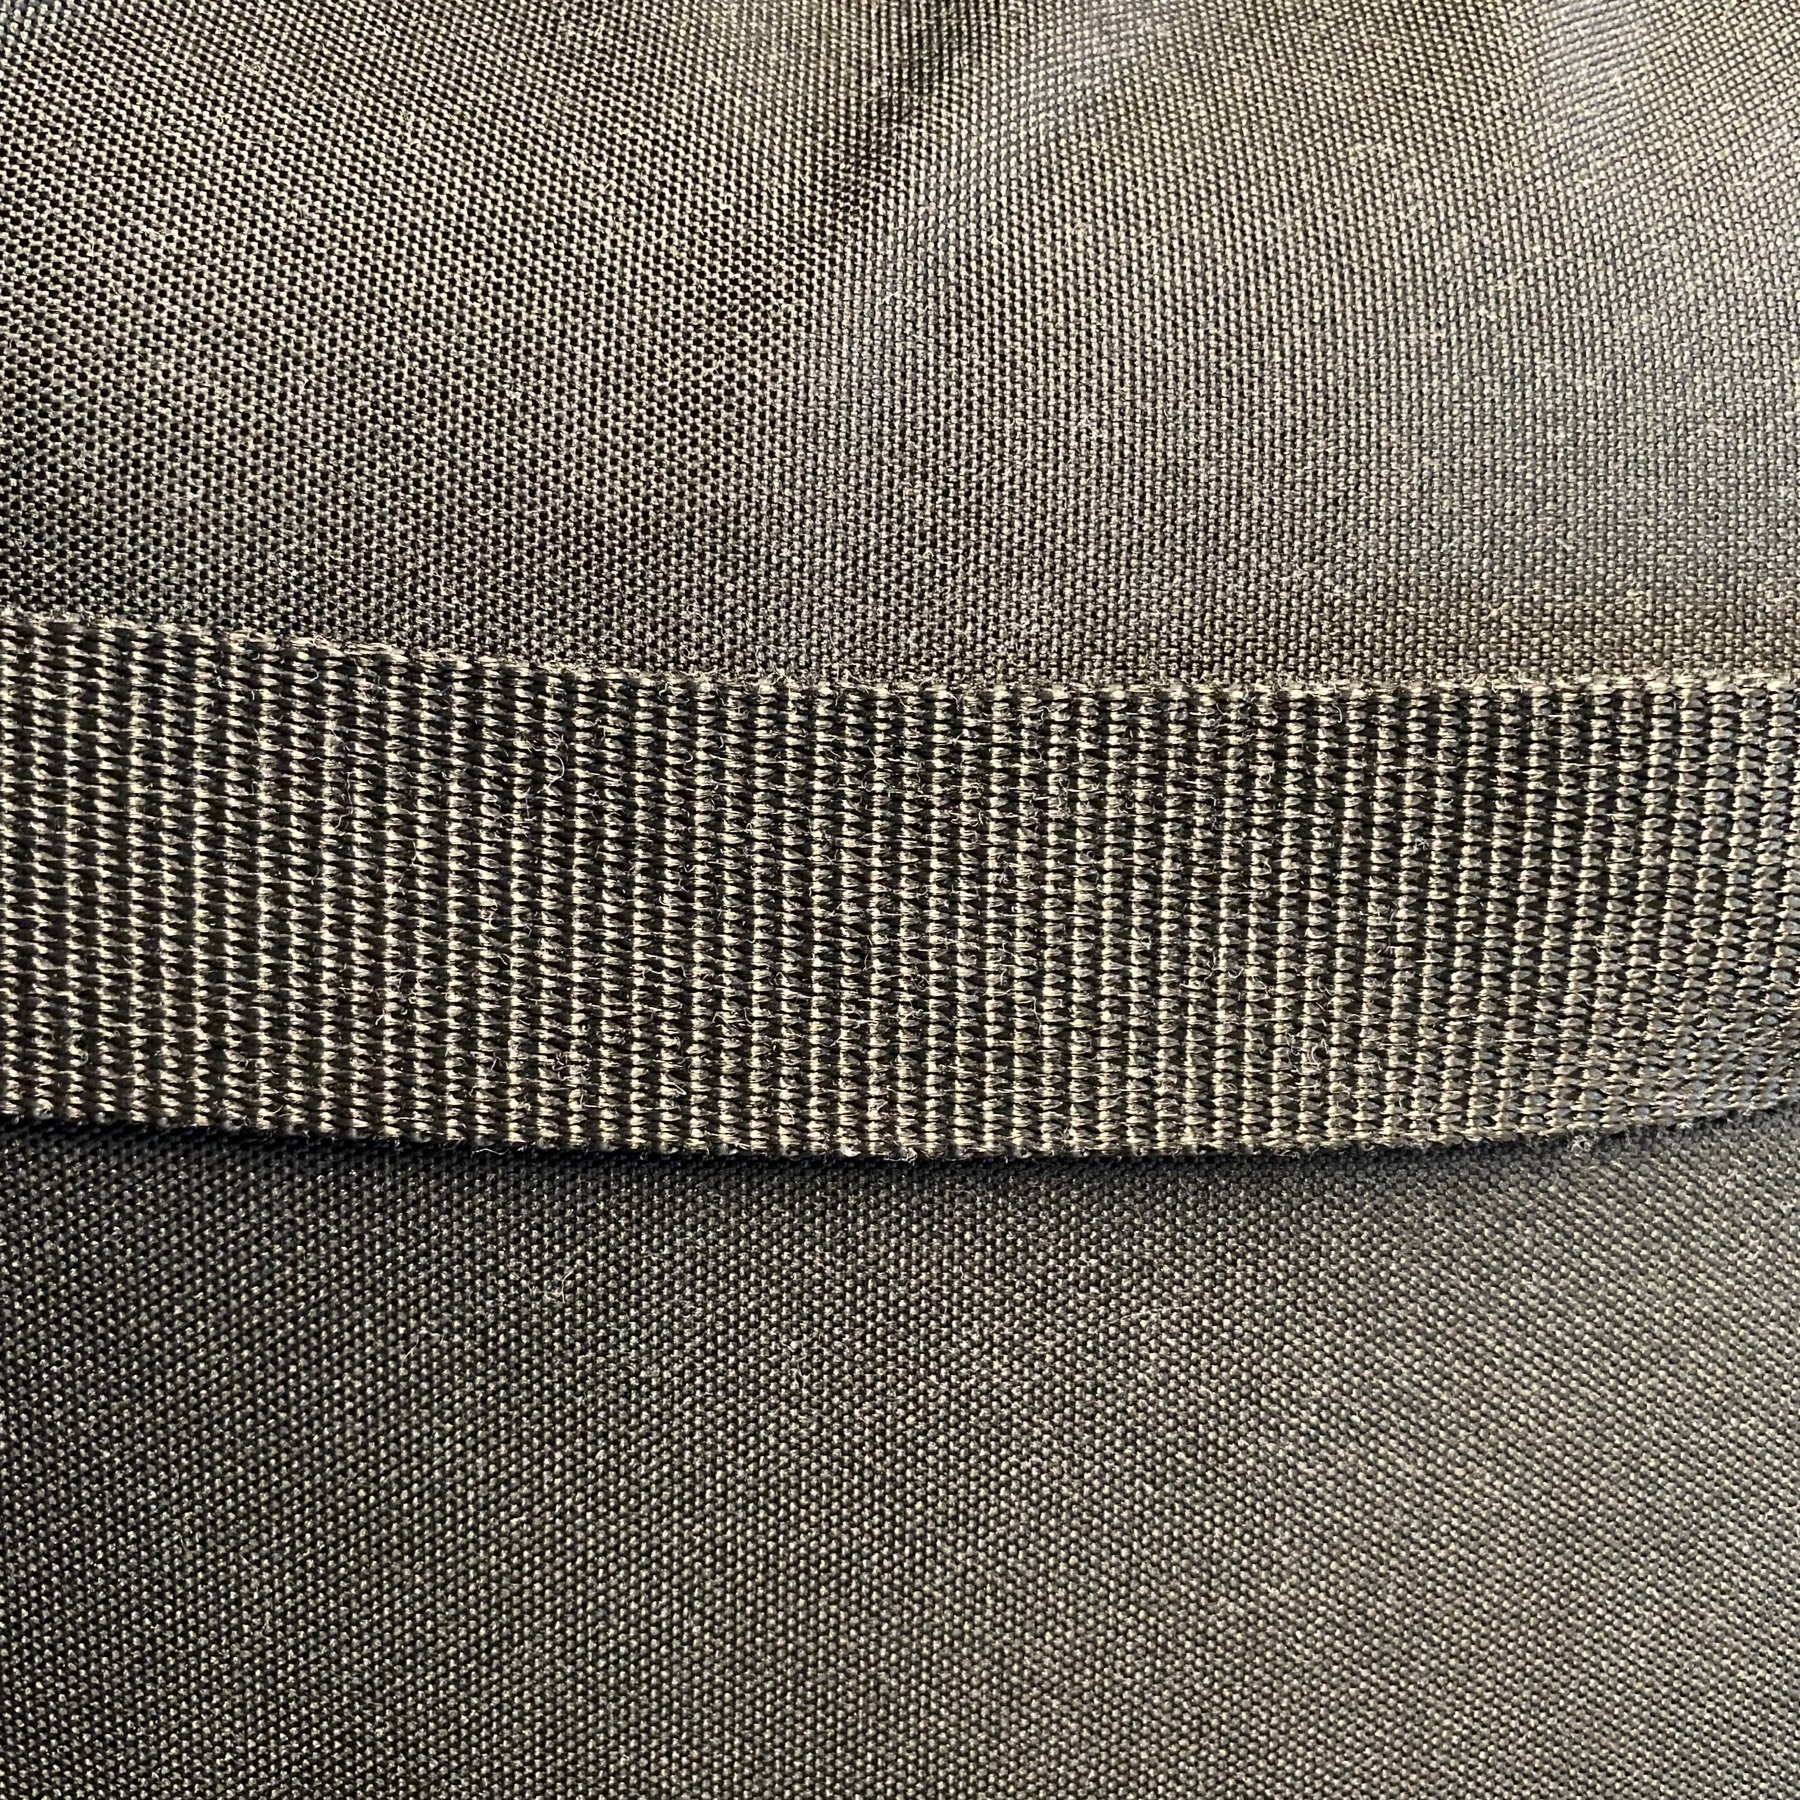 Close up of a cloth laptop bag.